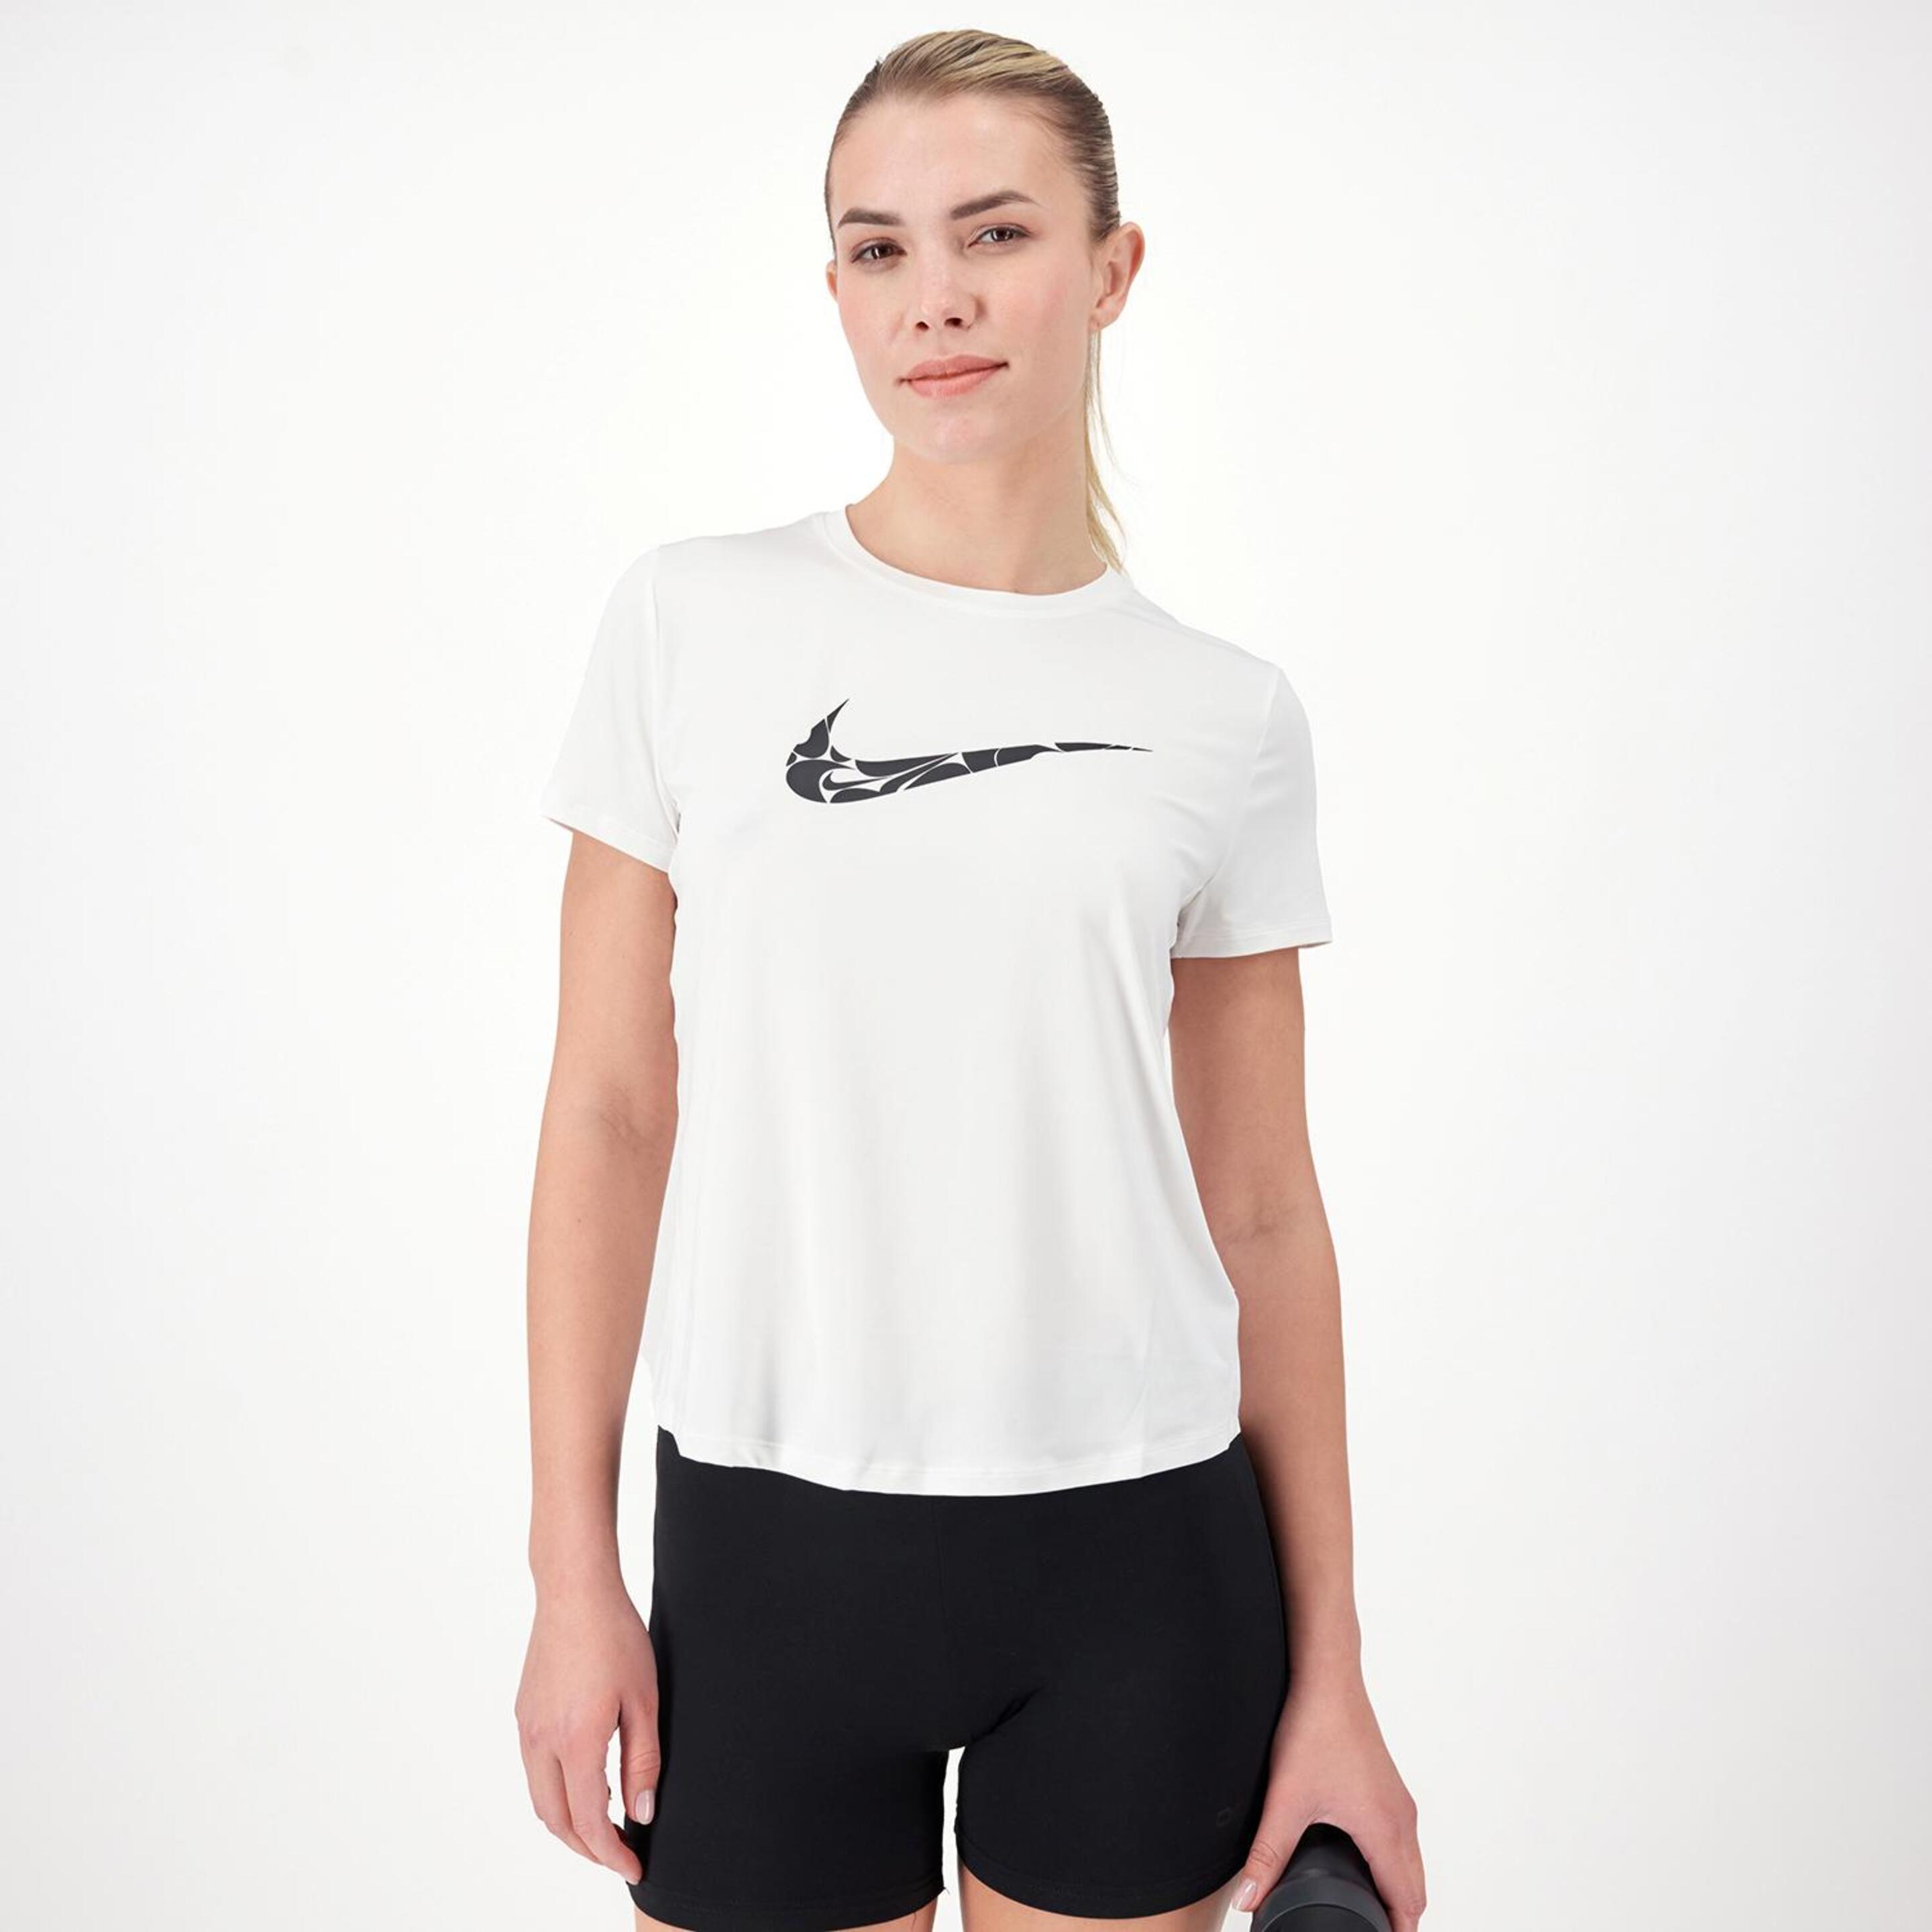 Nike One Swoosh - blanco - Camiseta Running Mujer